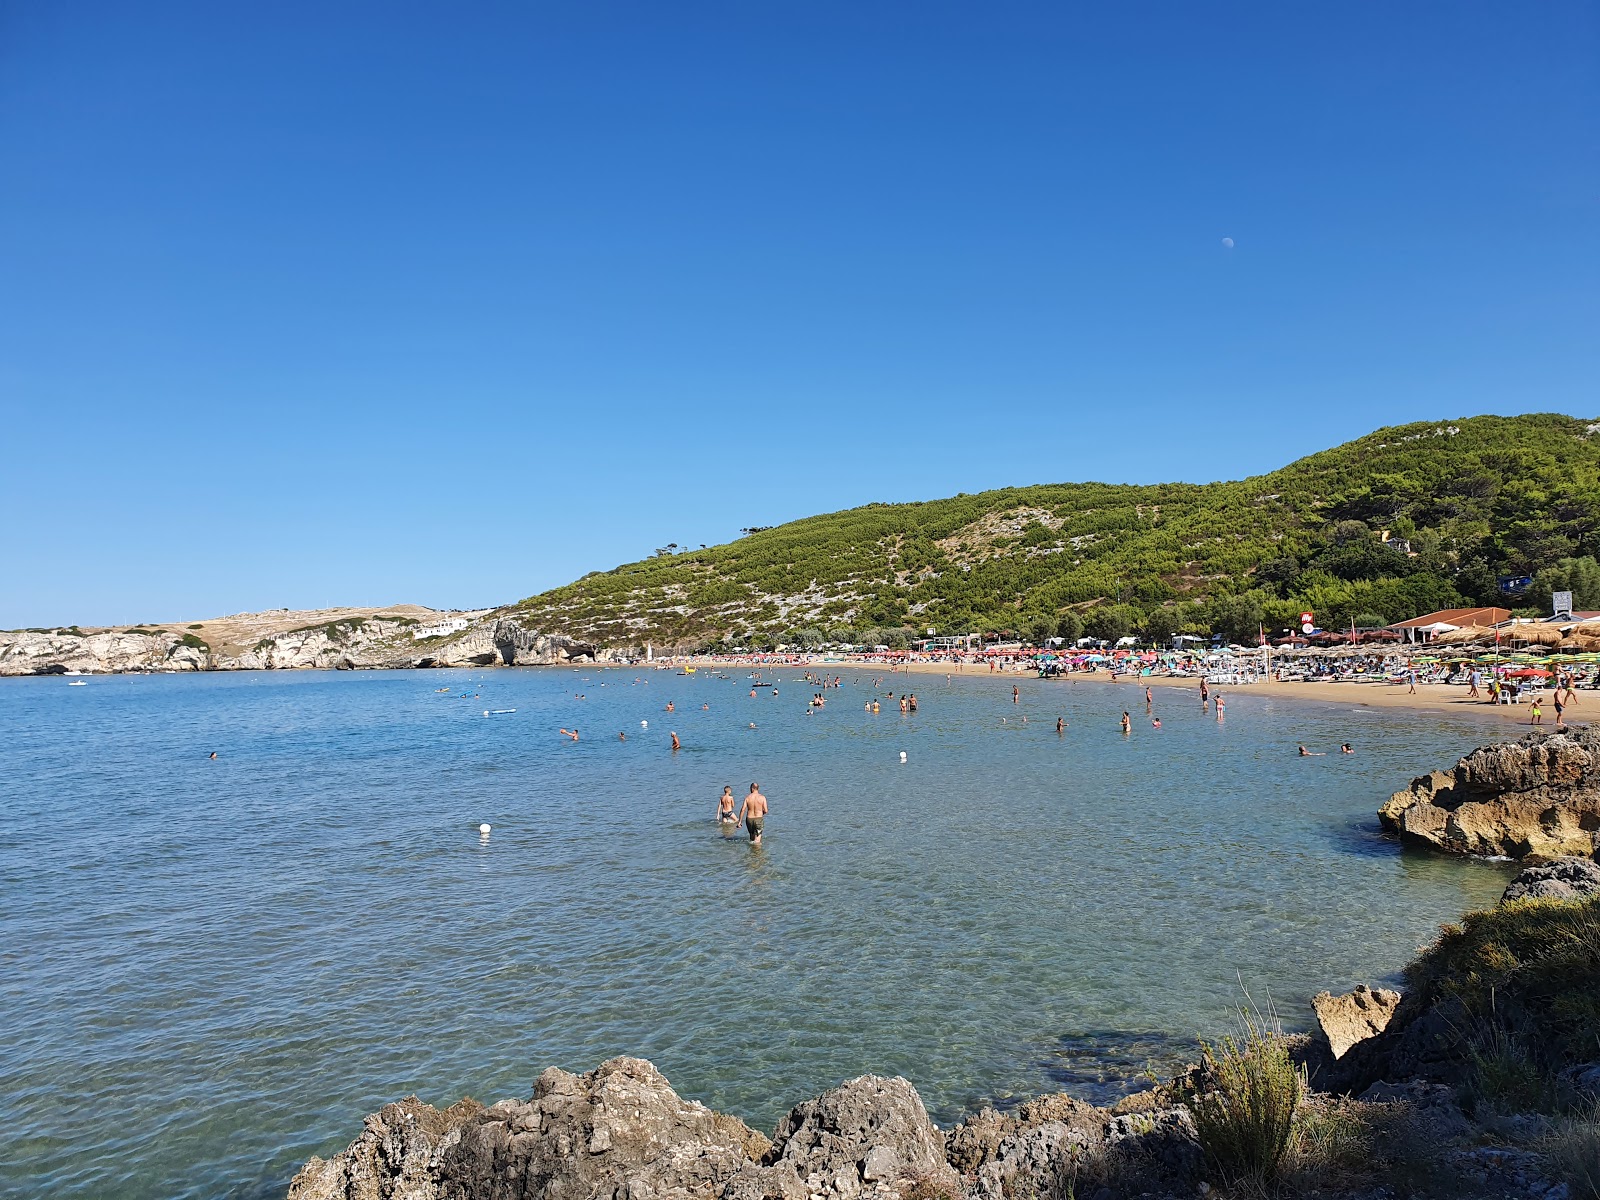 Spiaggia di San Nicola'in fotoğrafı i̇nce kahverengi kum yüzey ile